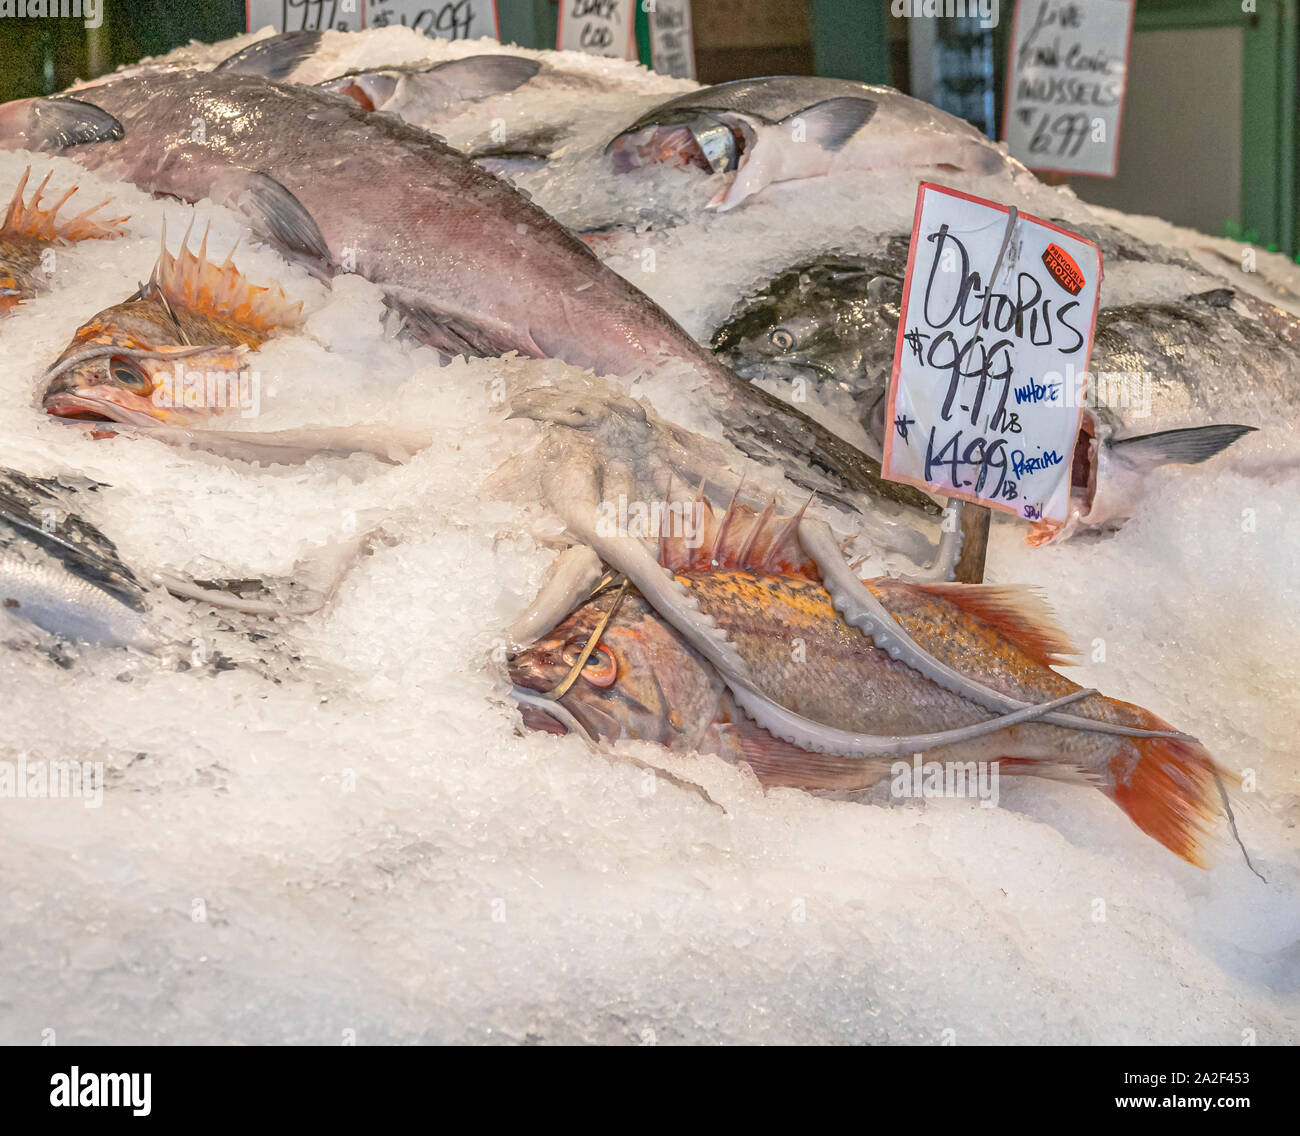 Fischgeschäft Anzeige der gekühlt ganze Kraken und Pazifik rockfish Snapper auf Eis bei einer öffentlichen Food Market in Seattle, Washington. Stockfoto